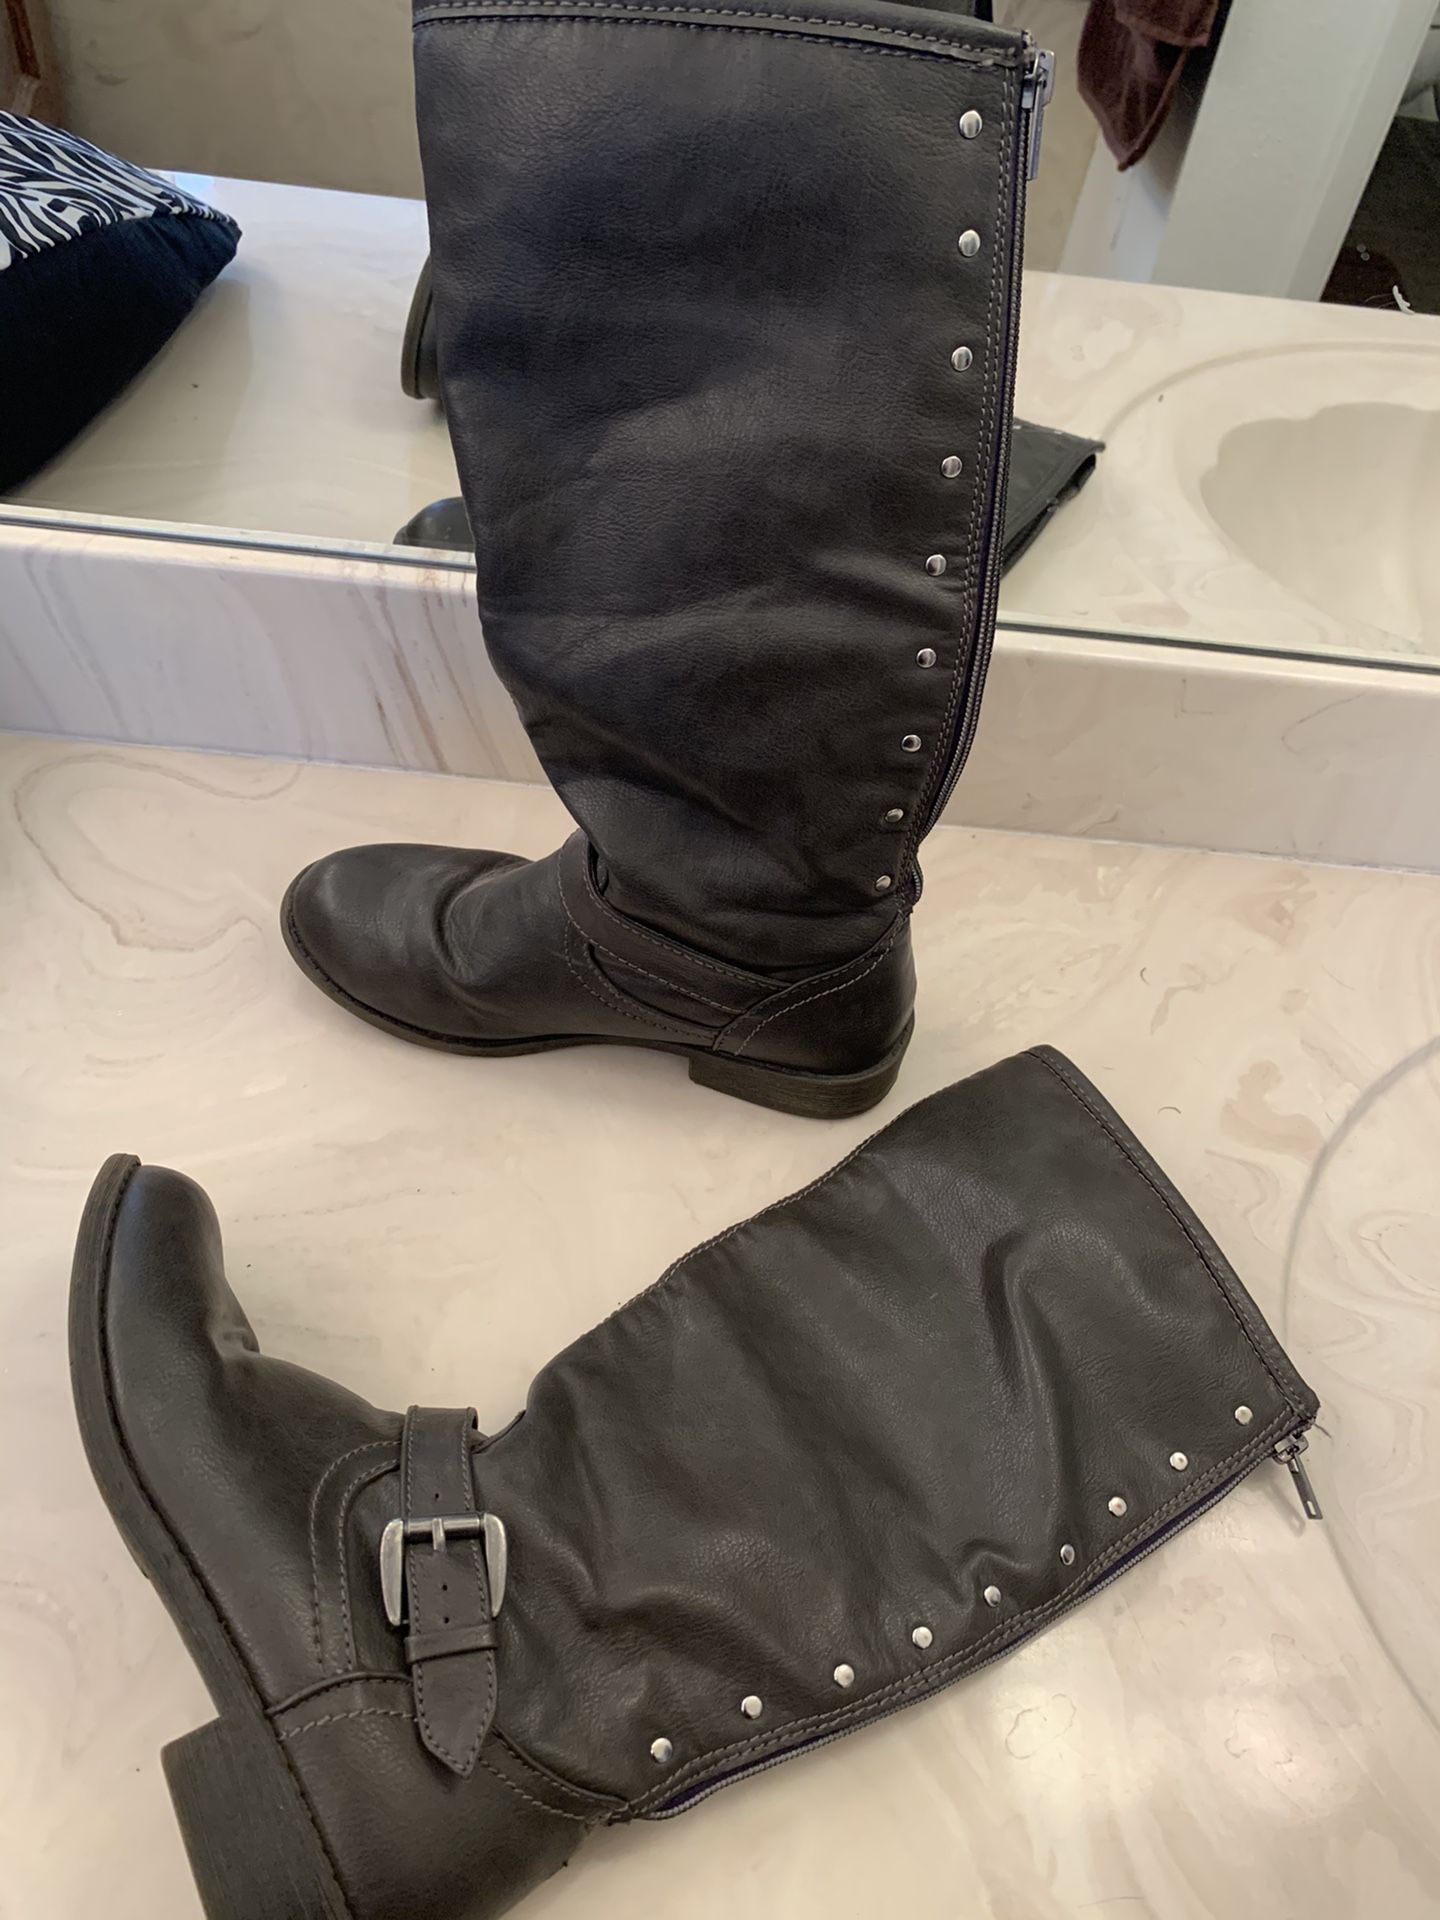 Girls boots size 4. F R E E